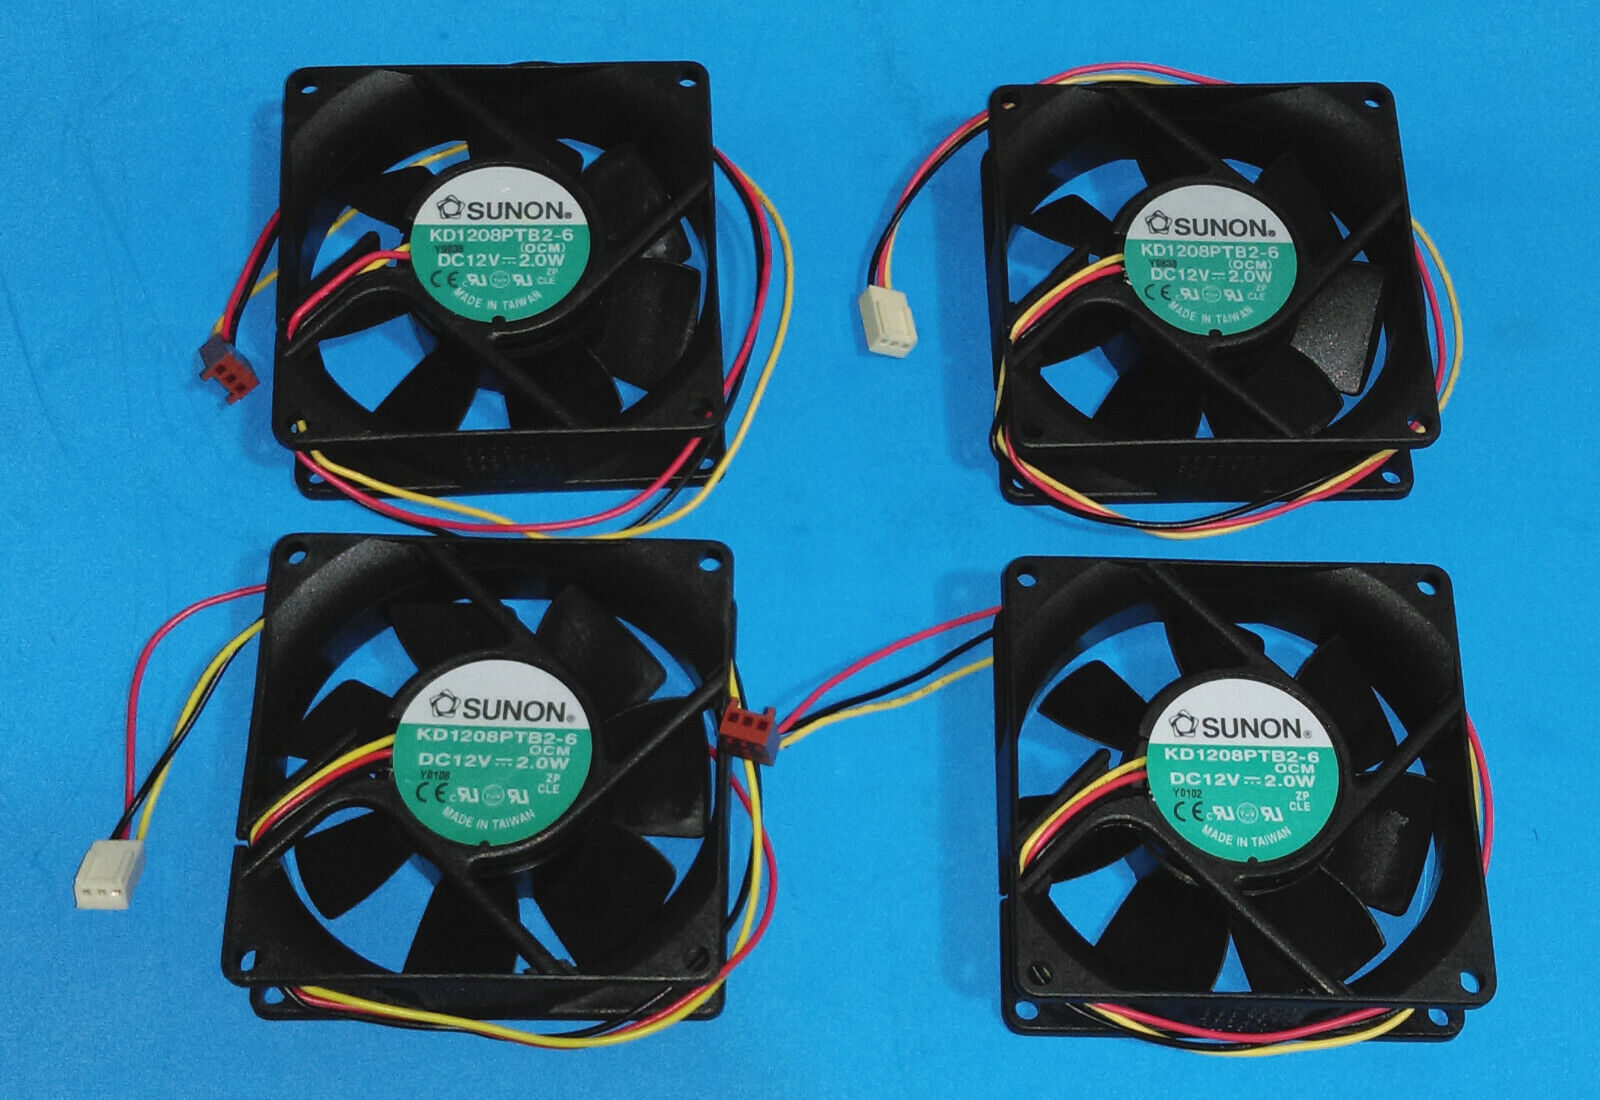 Lot 4: Sunon 80 X 80 X 25mm 3-pin Ball Bearing PC Case Cooling Fan 12V DC 2.0W